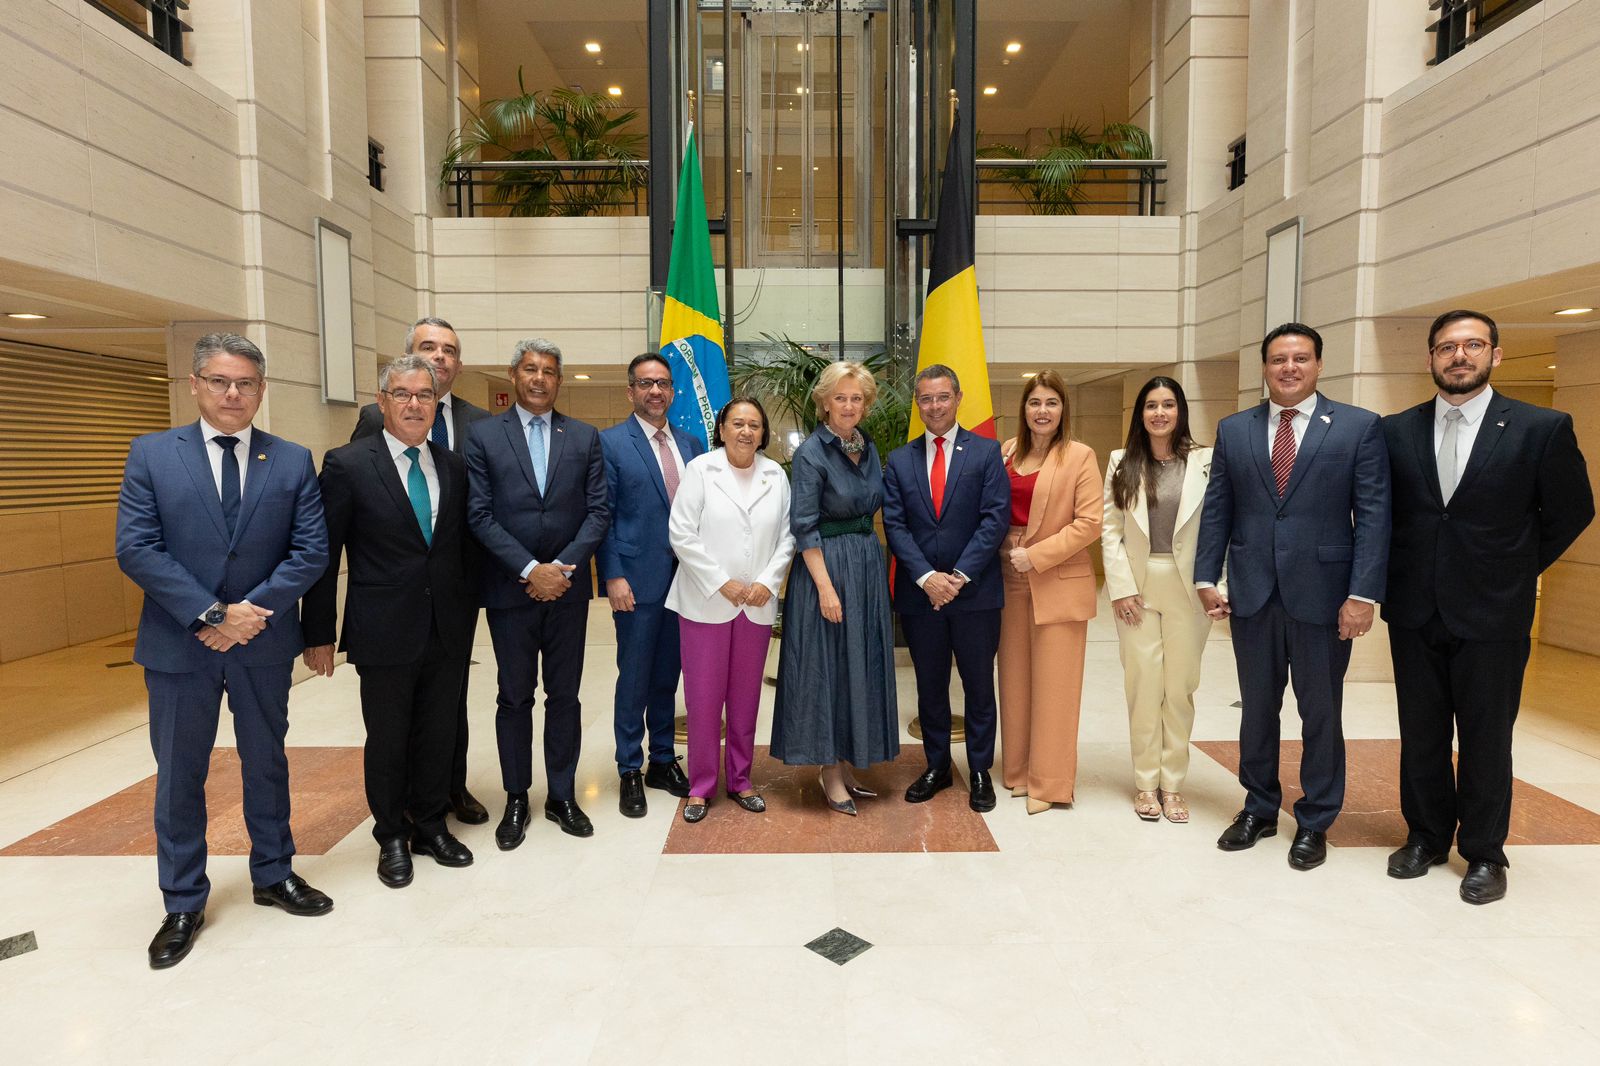  Governo de Pernambuco destaca potencial do Nordeste em missão internacional em Bruxelas